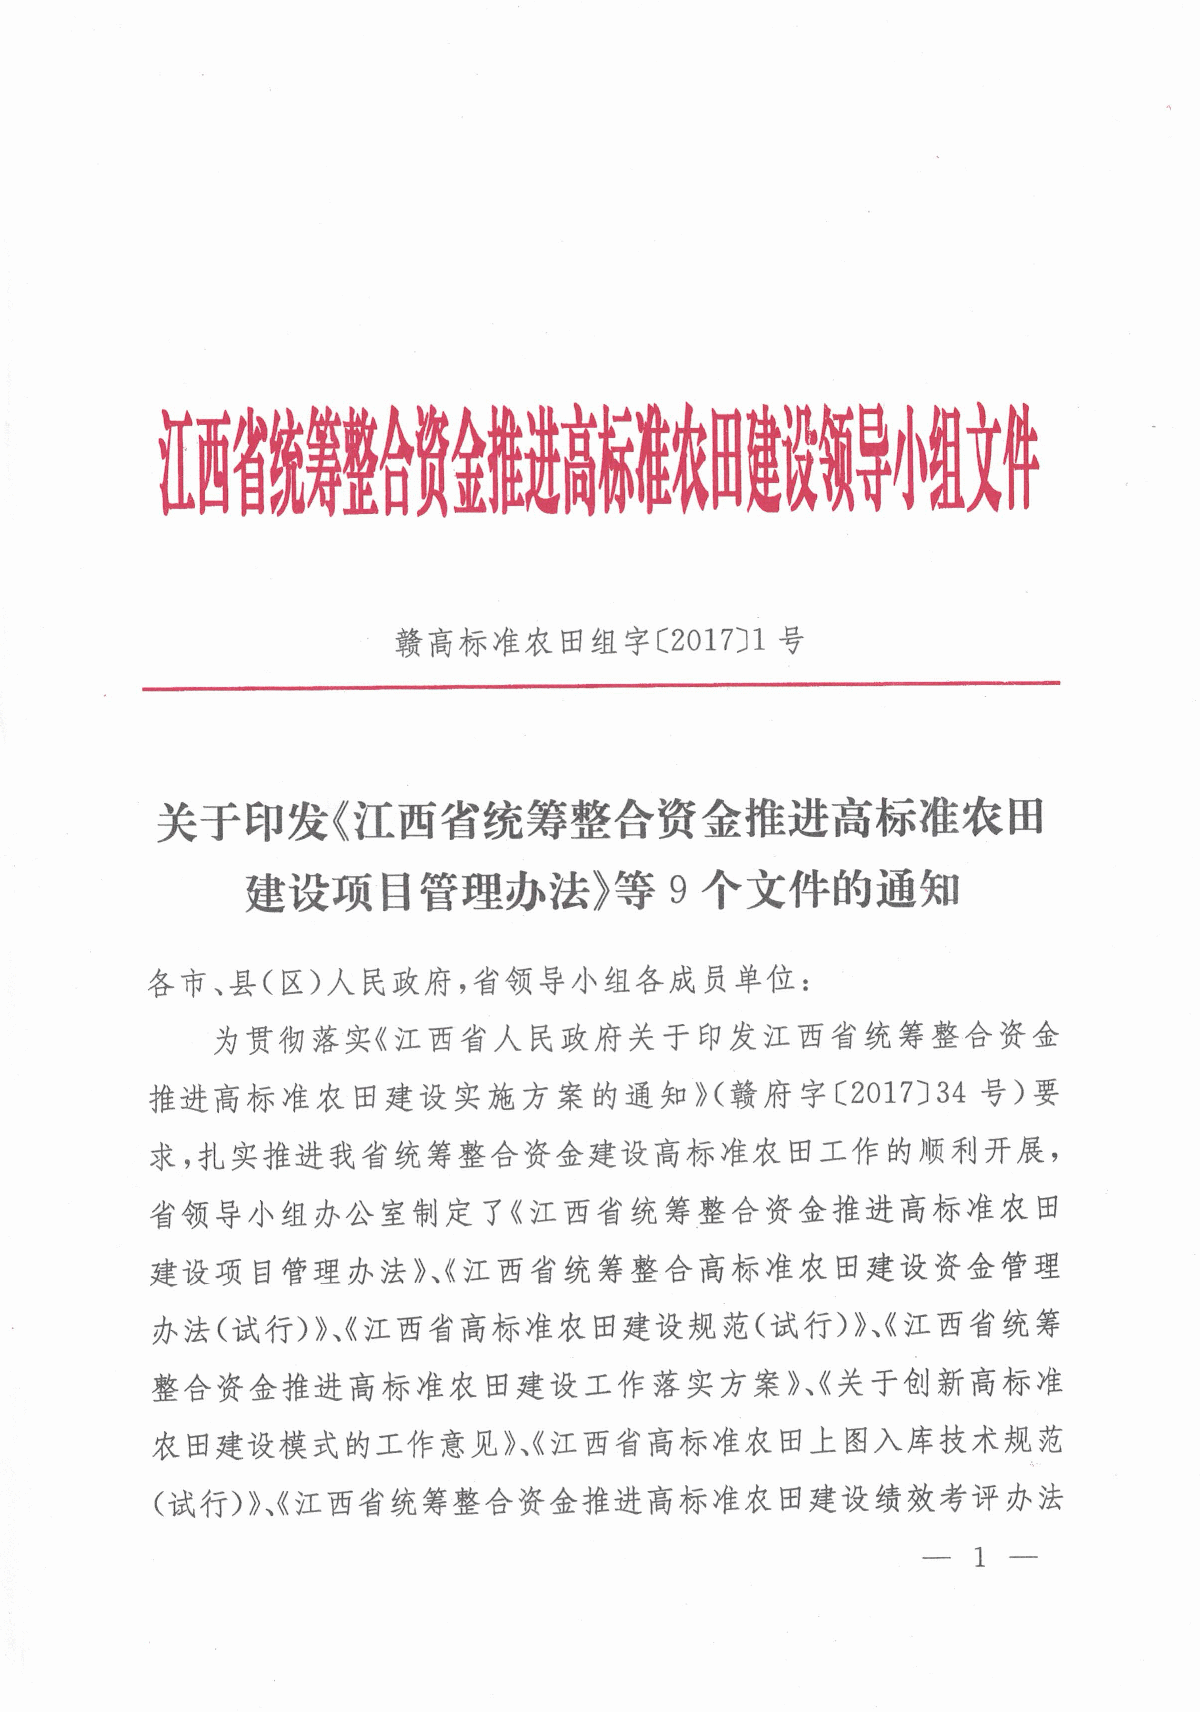 江西省高标准农田建设项目管理办法等9个文件